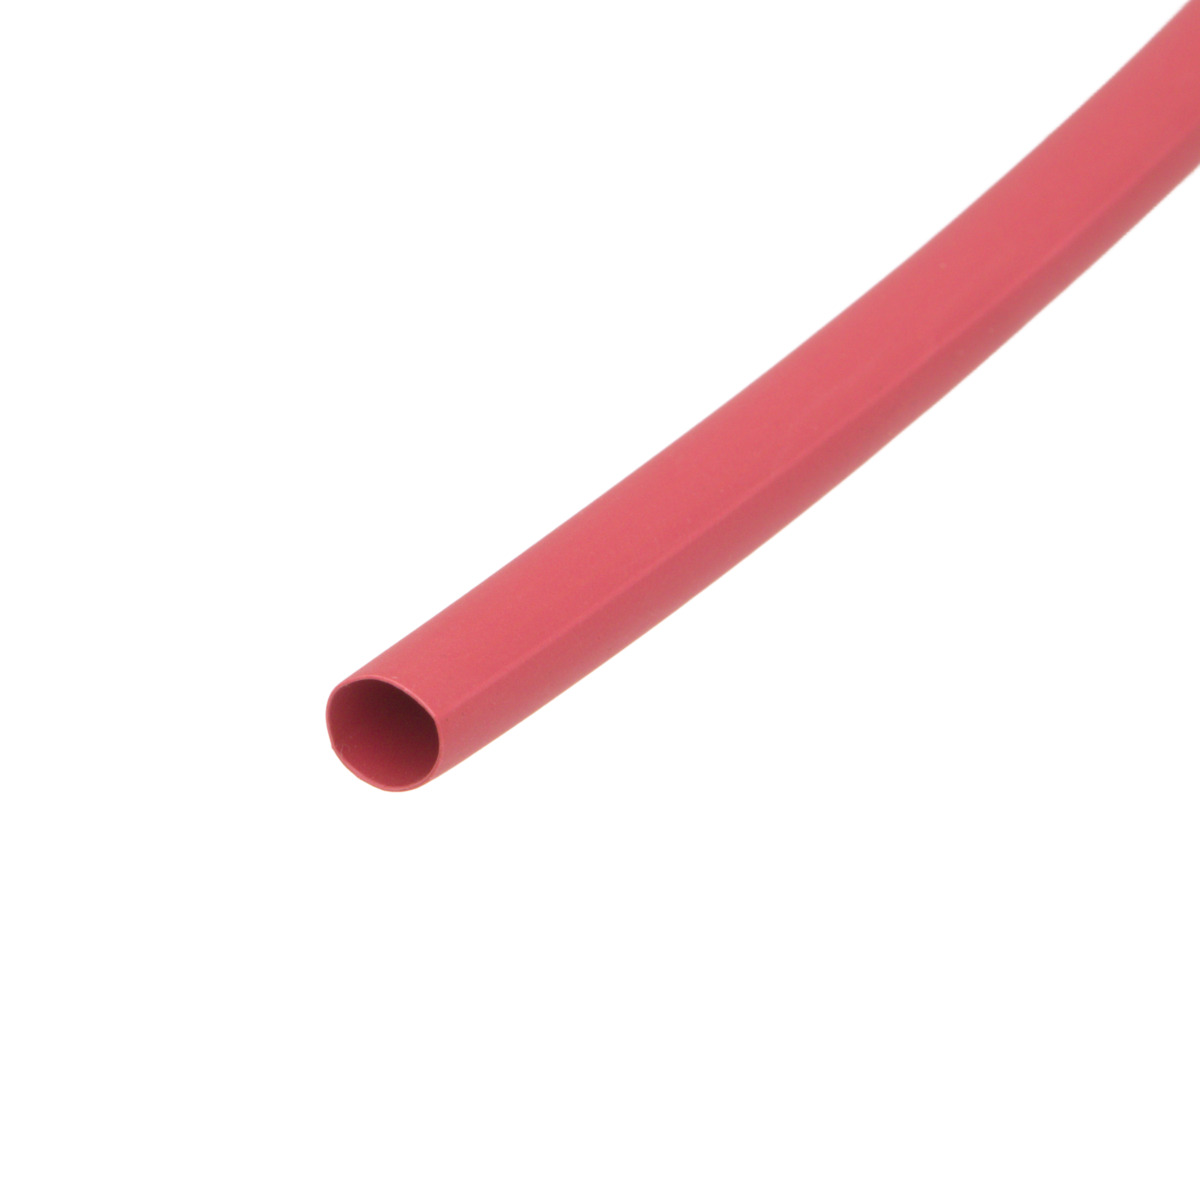 Pack de corte [1.2m] de tubo termorretráctil 2:1 Ø4.8mm rojo – Poliolefina libre de halógeno e ignífugo [x25]